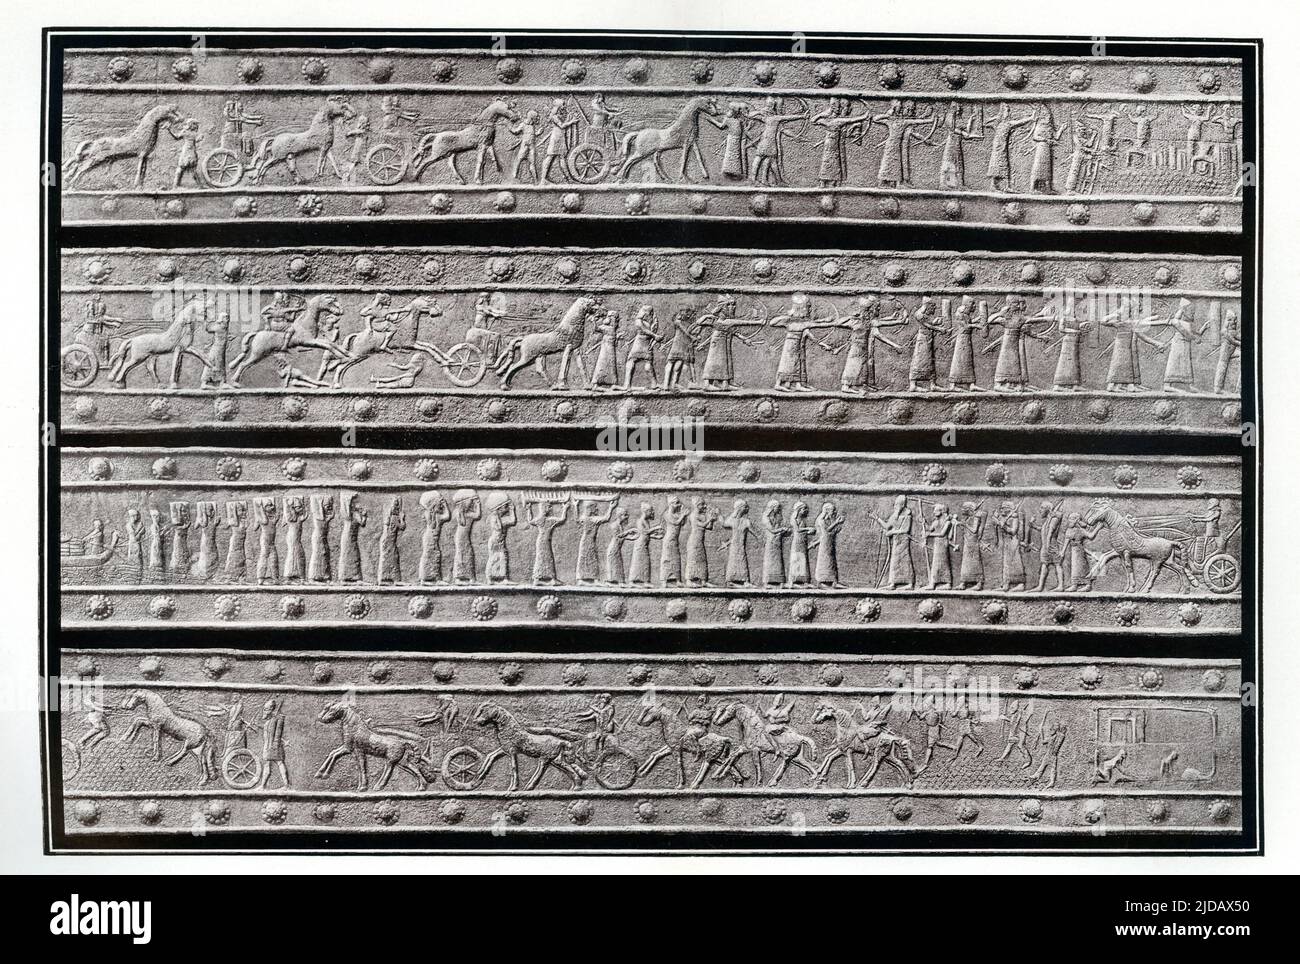 Dieses Bild aus dem Jahr 1908 zeigt das Relief auf einer Bronzetür am Palast von Shalamanesser III (c. 859-824 v. Chr.) in Balawat. Das Original befindet sich im British Museum in London. Balawat ist eine archäologische Stätte der alten assyrischen Stadt Imgur-Enlil und ein modernes Dorf in der Provinz Ninive (Irak). Die Tafeln informieren uns, dass die Tore von Balawat (ein Tag marsch nordöstlich von Nimrud) aus duftendem Zedernholz bestehen; sie wurden an riesigen Zedernholz-Stämmen aufgehängt, die mit Bronze bedeckt und in Steinsockel gedreht waren. Die Tore waren vielleicht etwa 12 Meter hoch. Als sie 1878 von Hormuzd Rassam entdeckt wurden Stockfoto